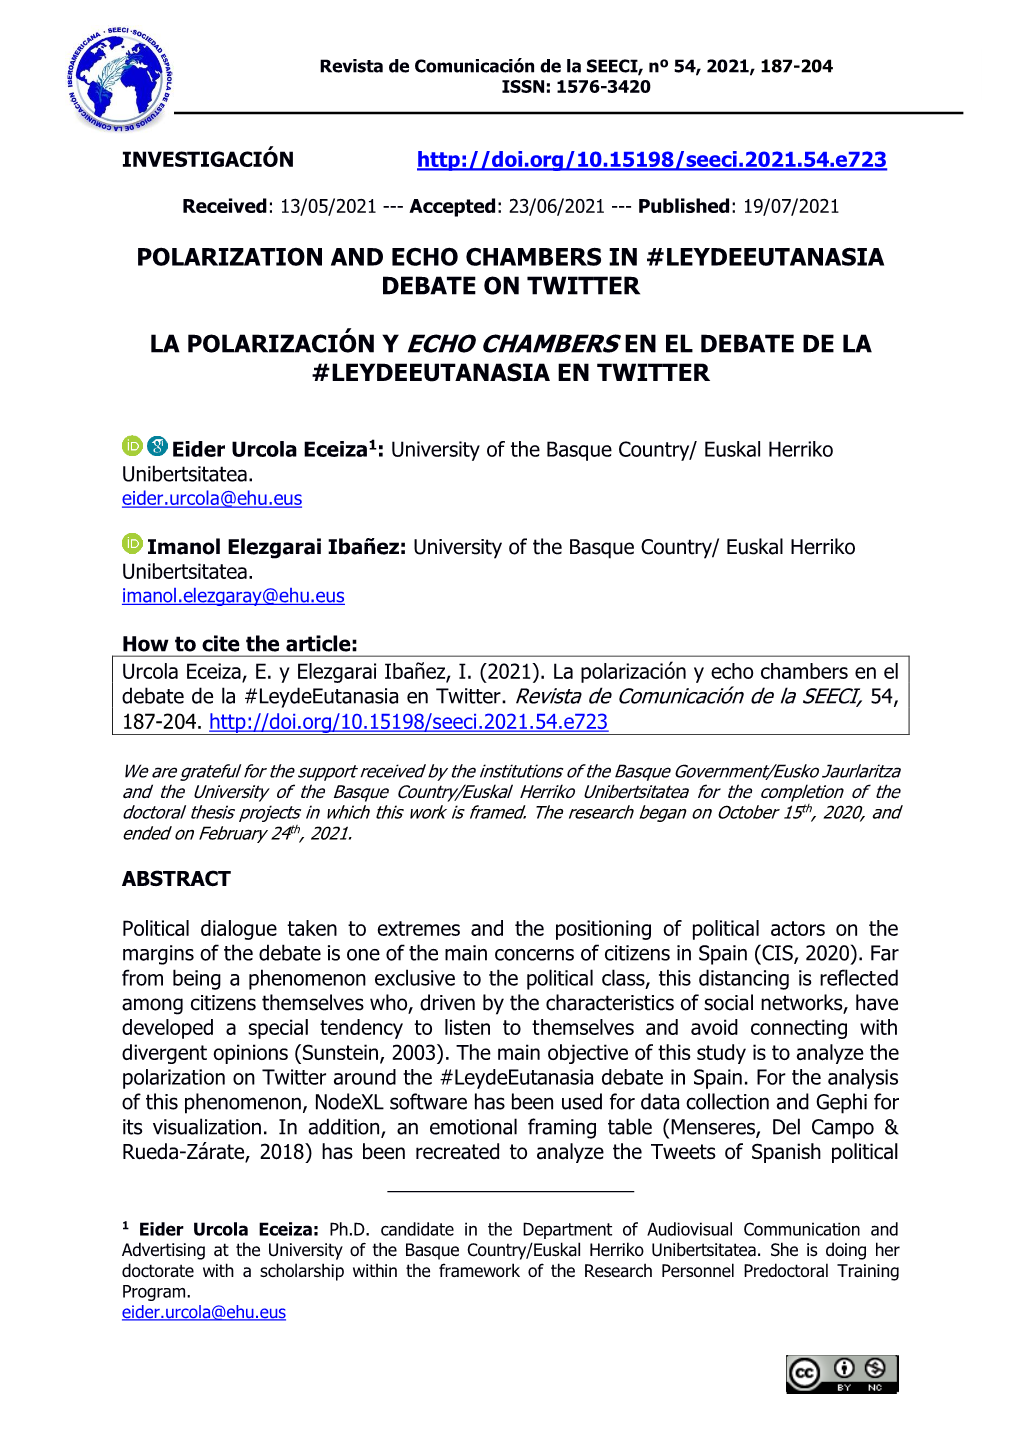 Polarization and Echo Chambers in #Leydeeutanasia Debate on Twitter La Polarización Y Echo Chambers En El Debate De La #Leydeeu